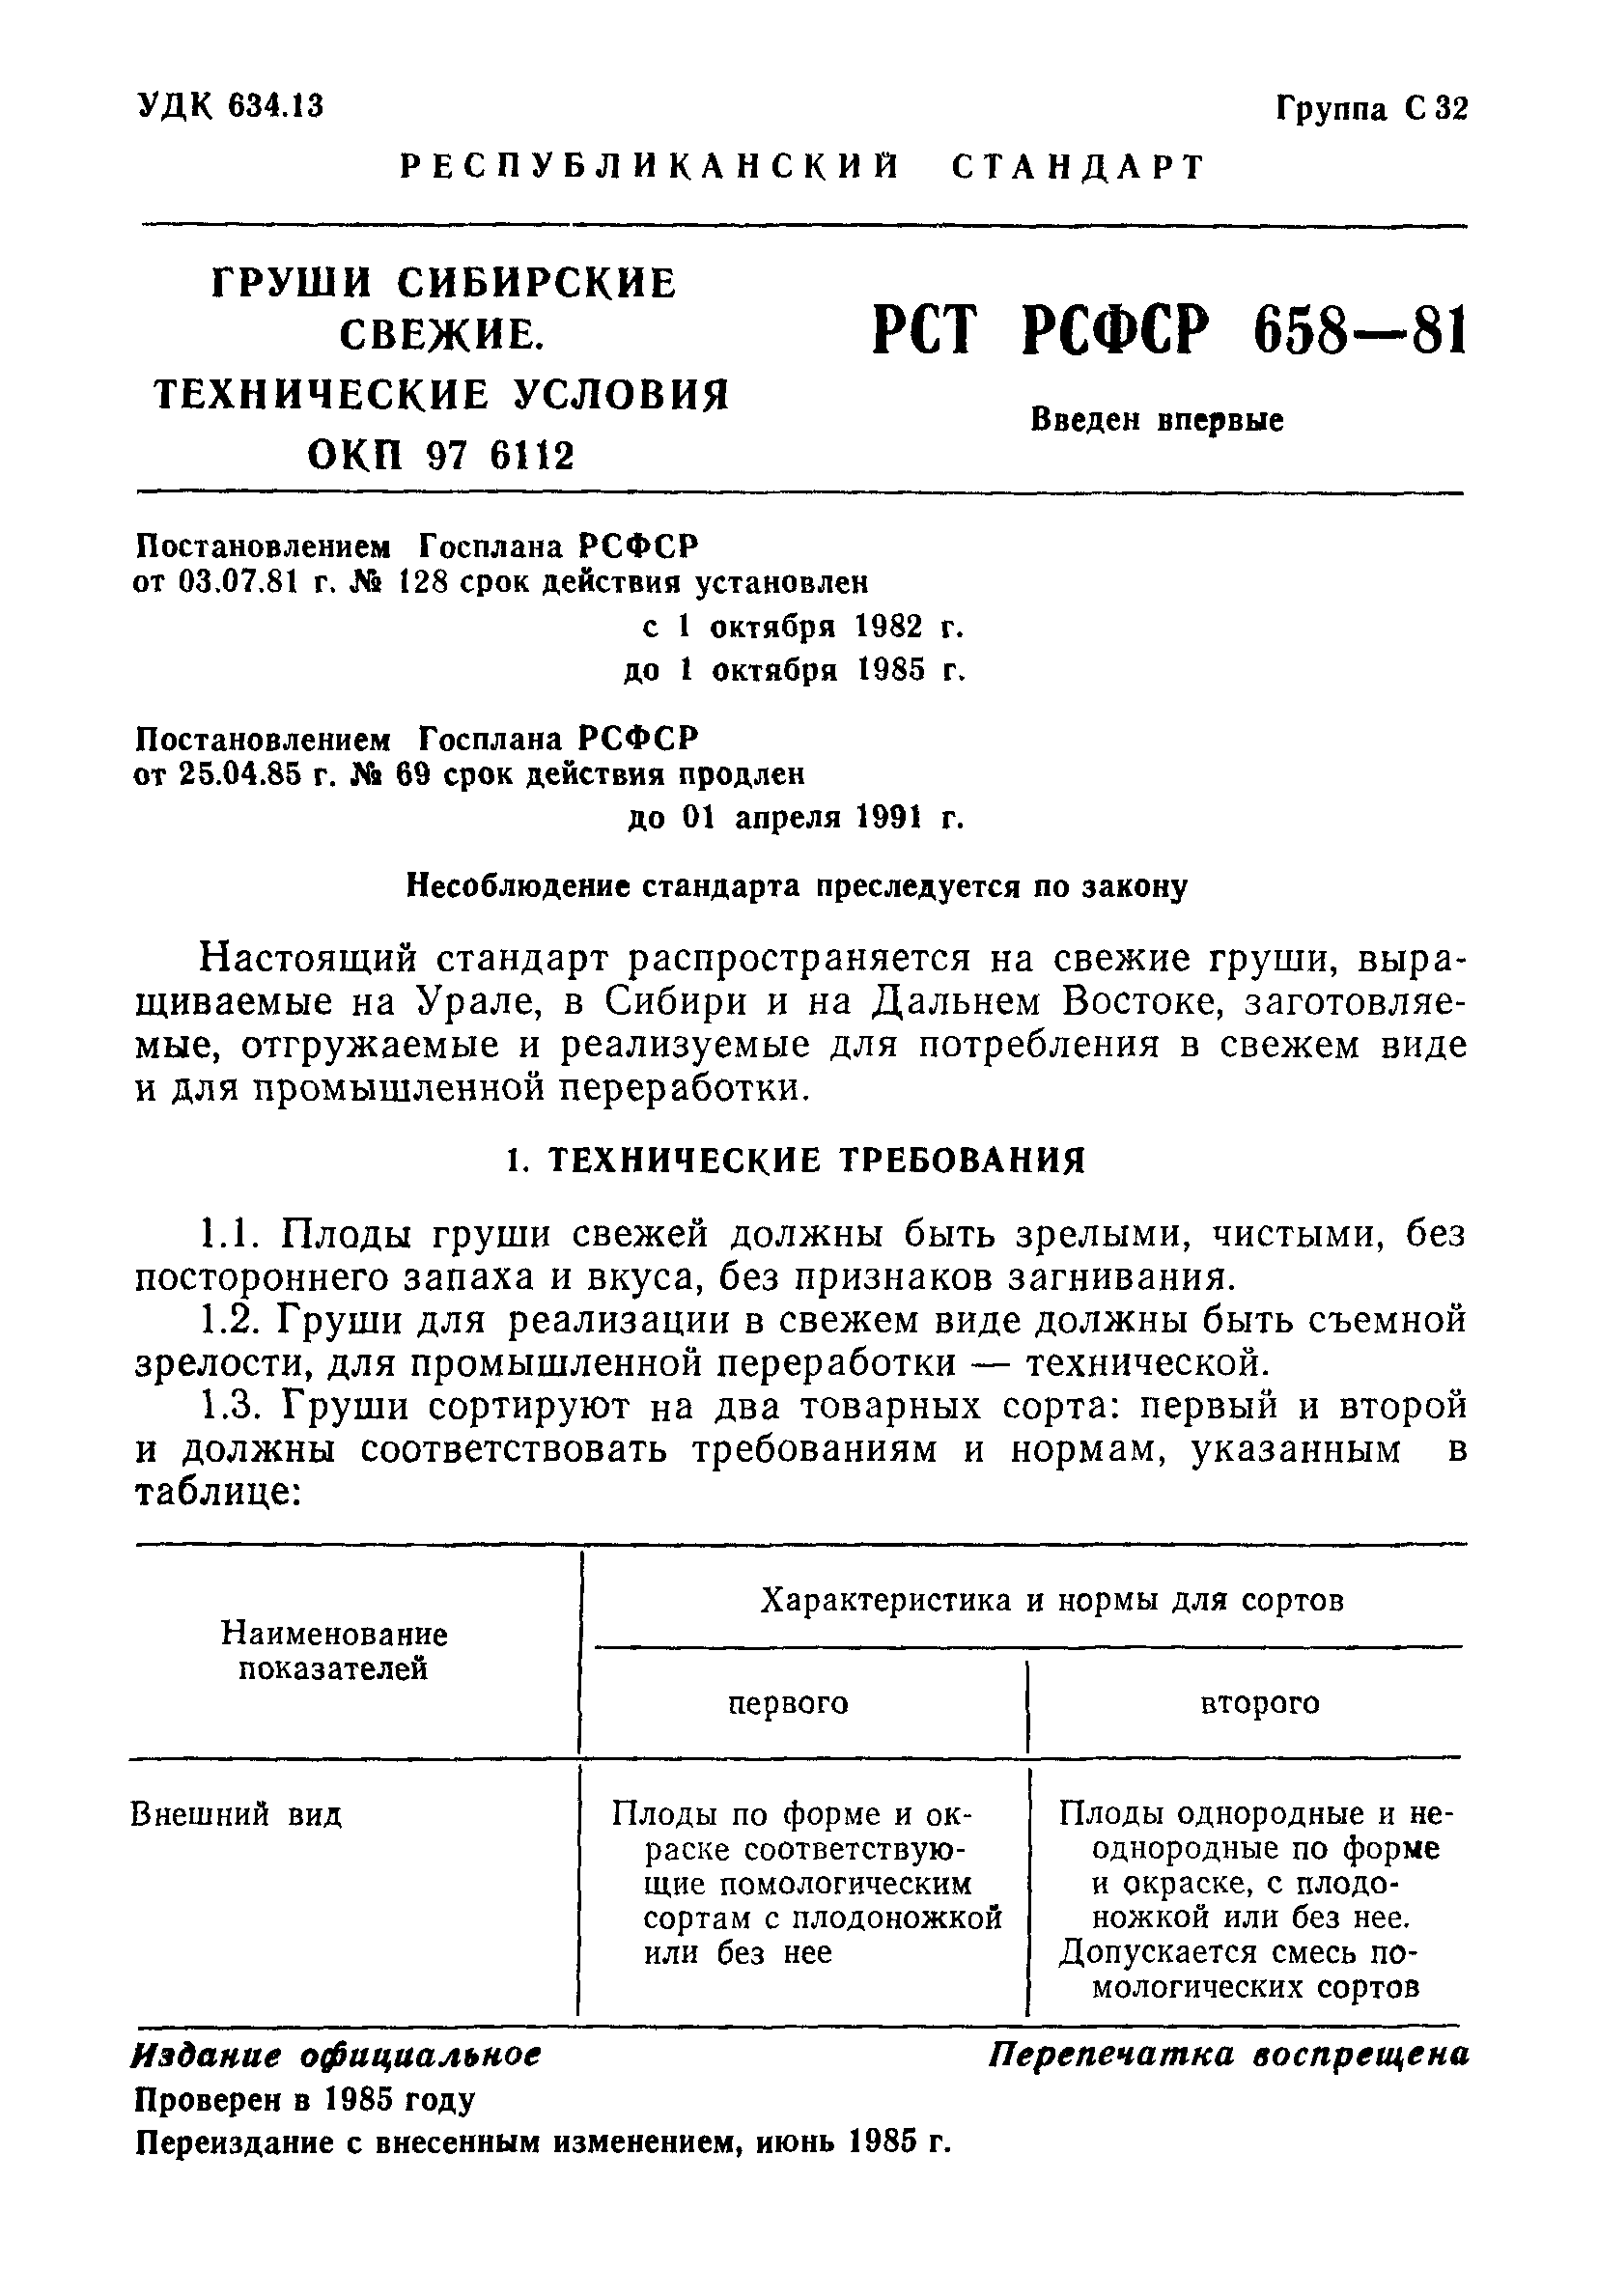 РСТ РСФСР 658-81